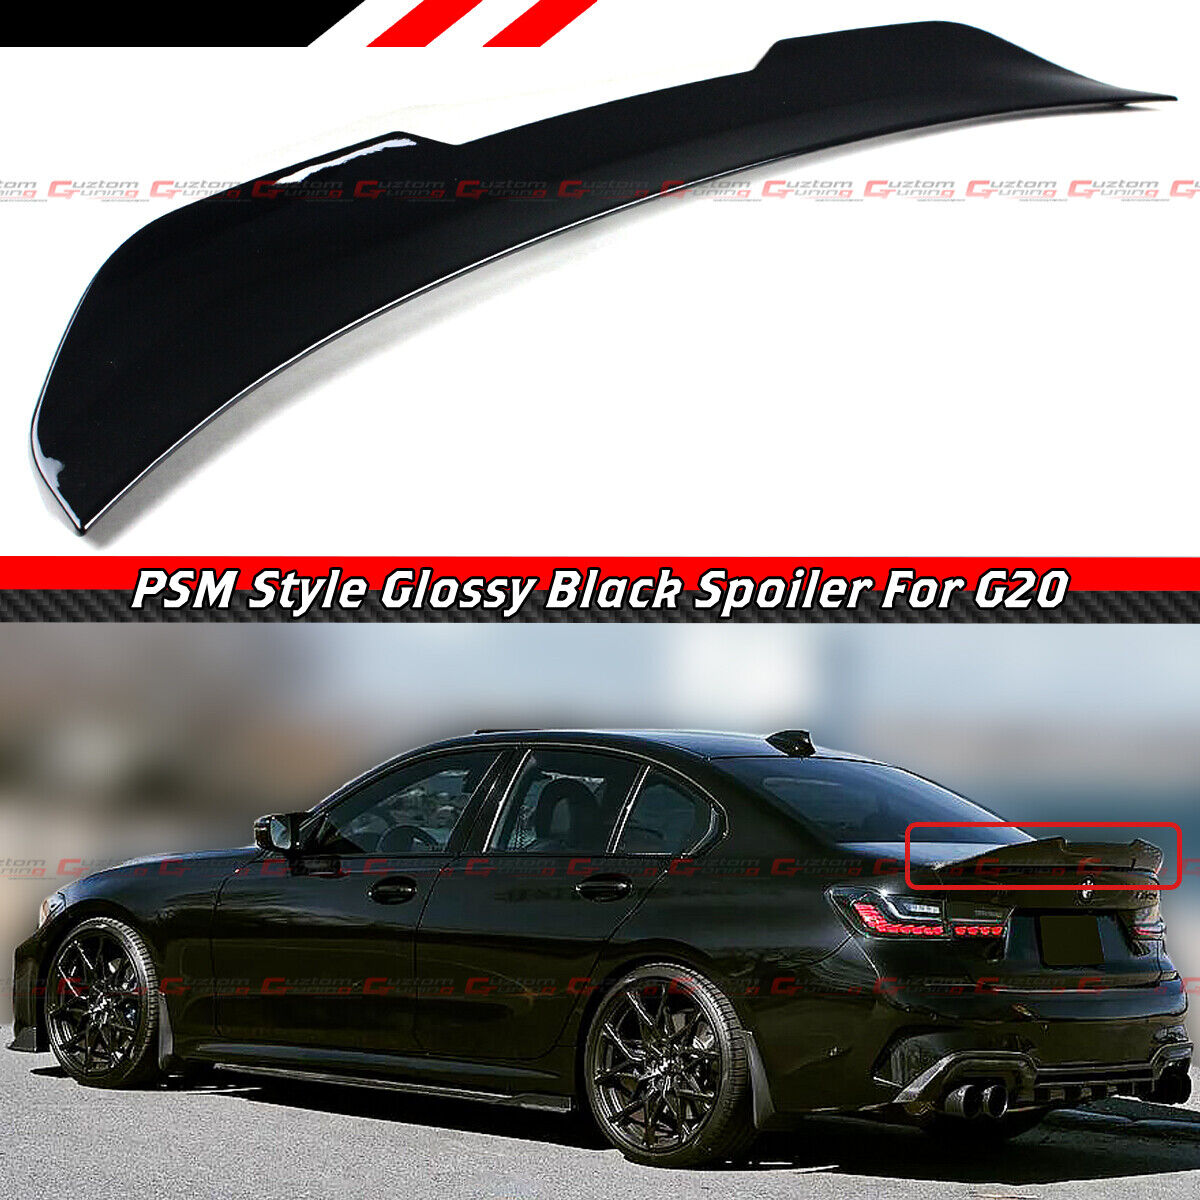 FOR 19-22 BMW G20 330i M340i M3 G80 GLOSS BLACK PSM STYLE HIGHKICK TRUNK SPOILER